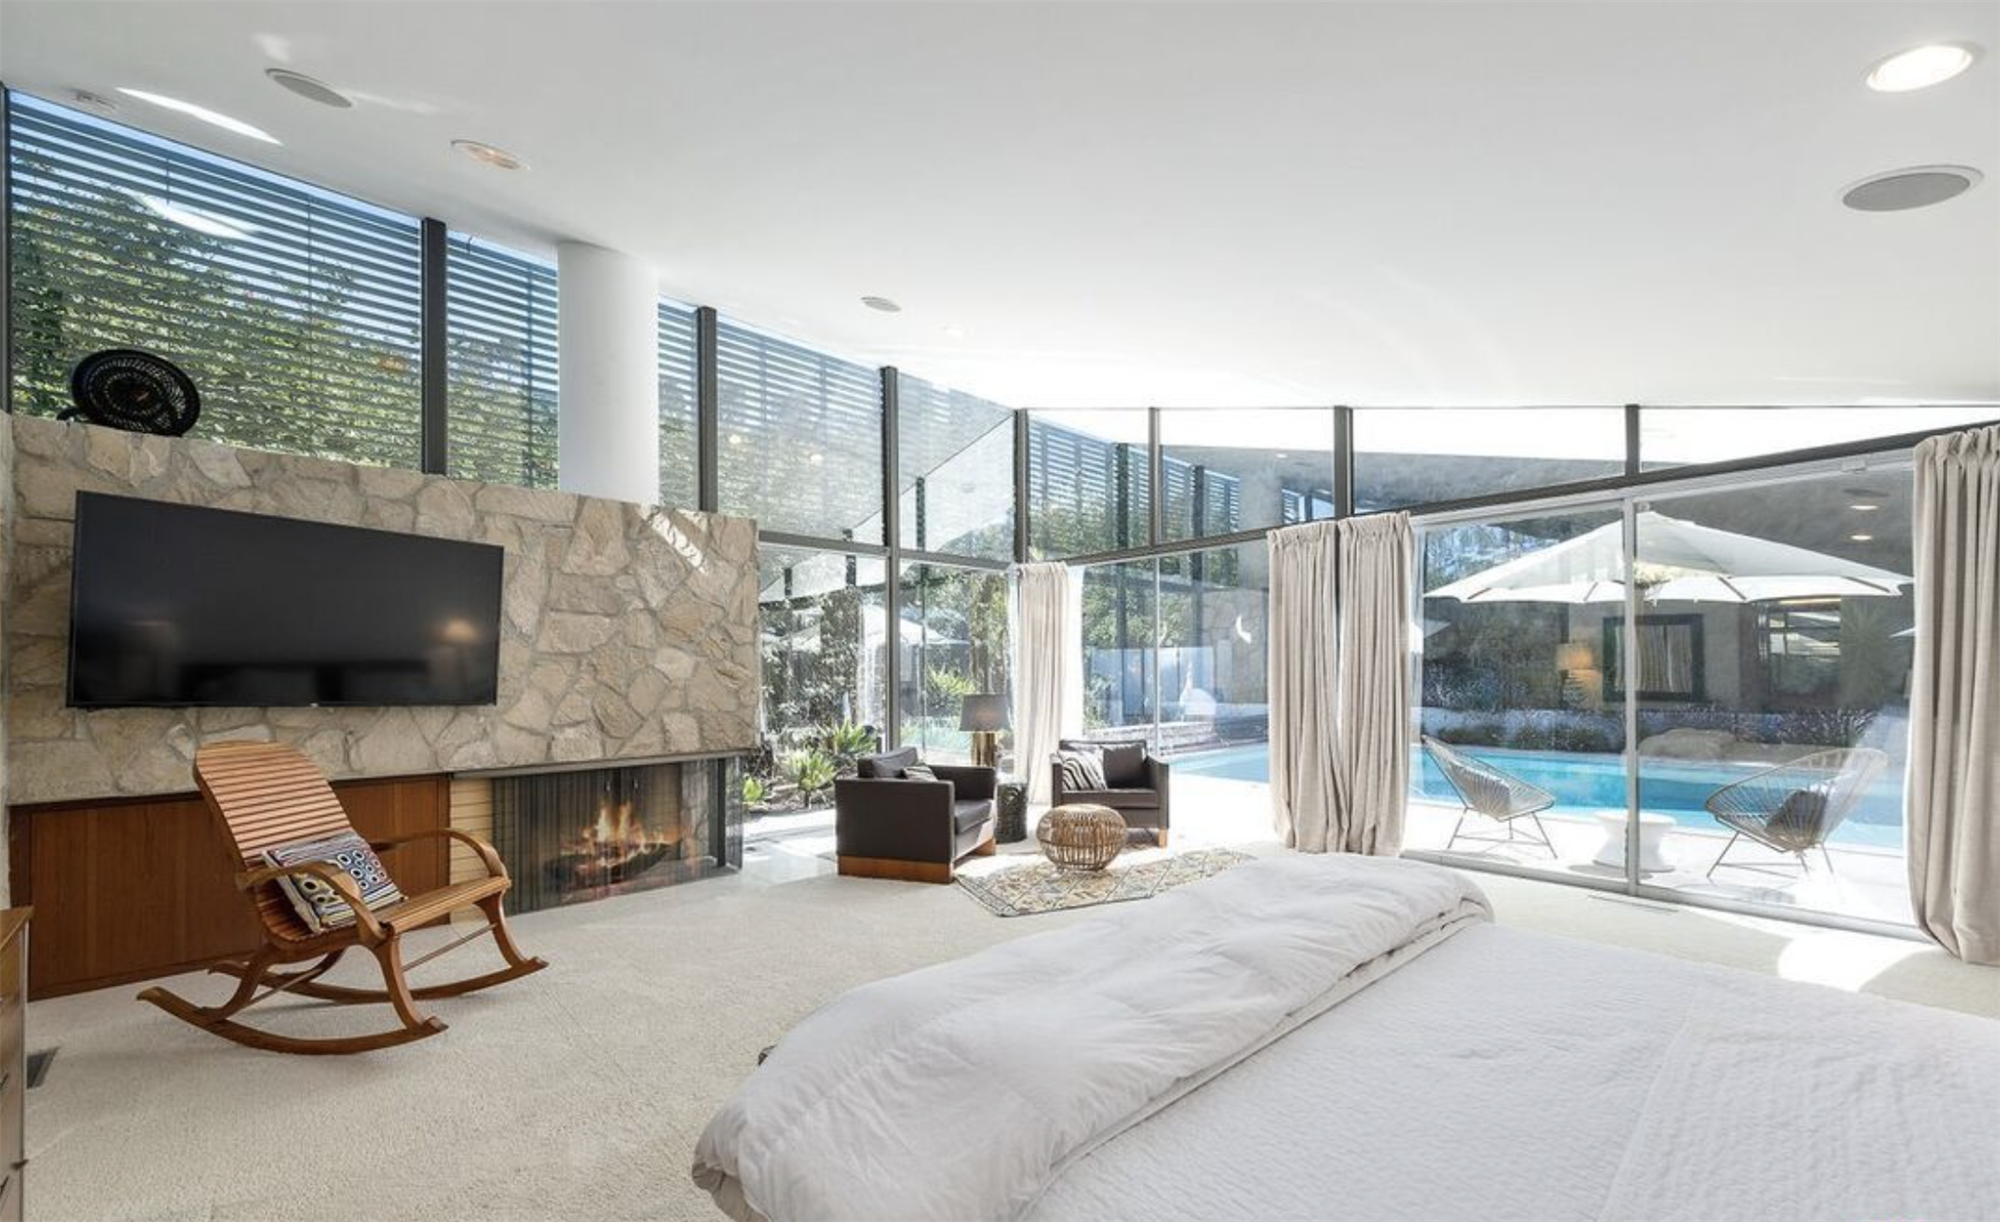 Casa de la actriz de la serie Modern Family Julie Bowen dormitorio con vistas a la piscina